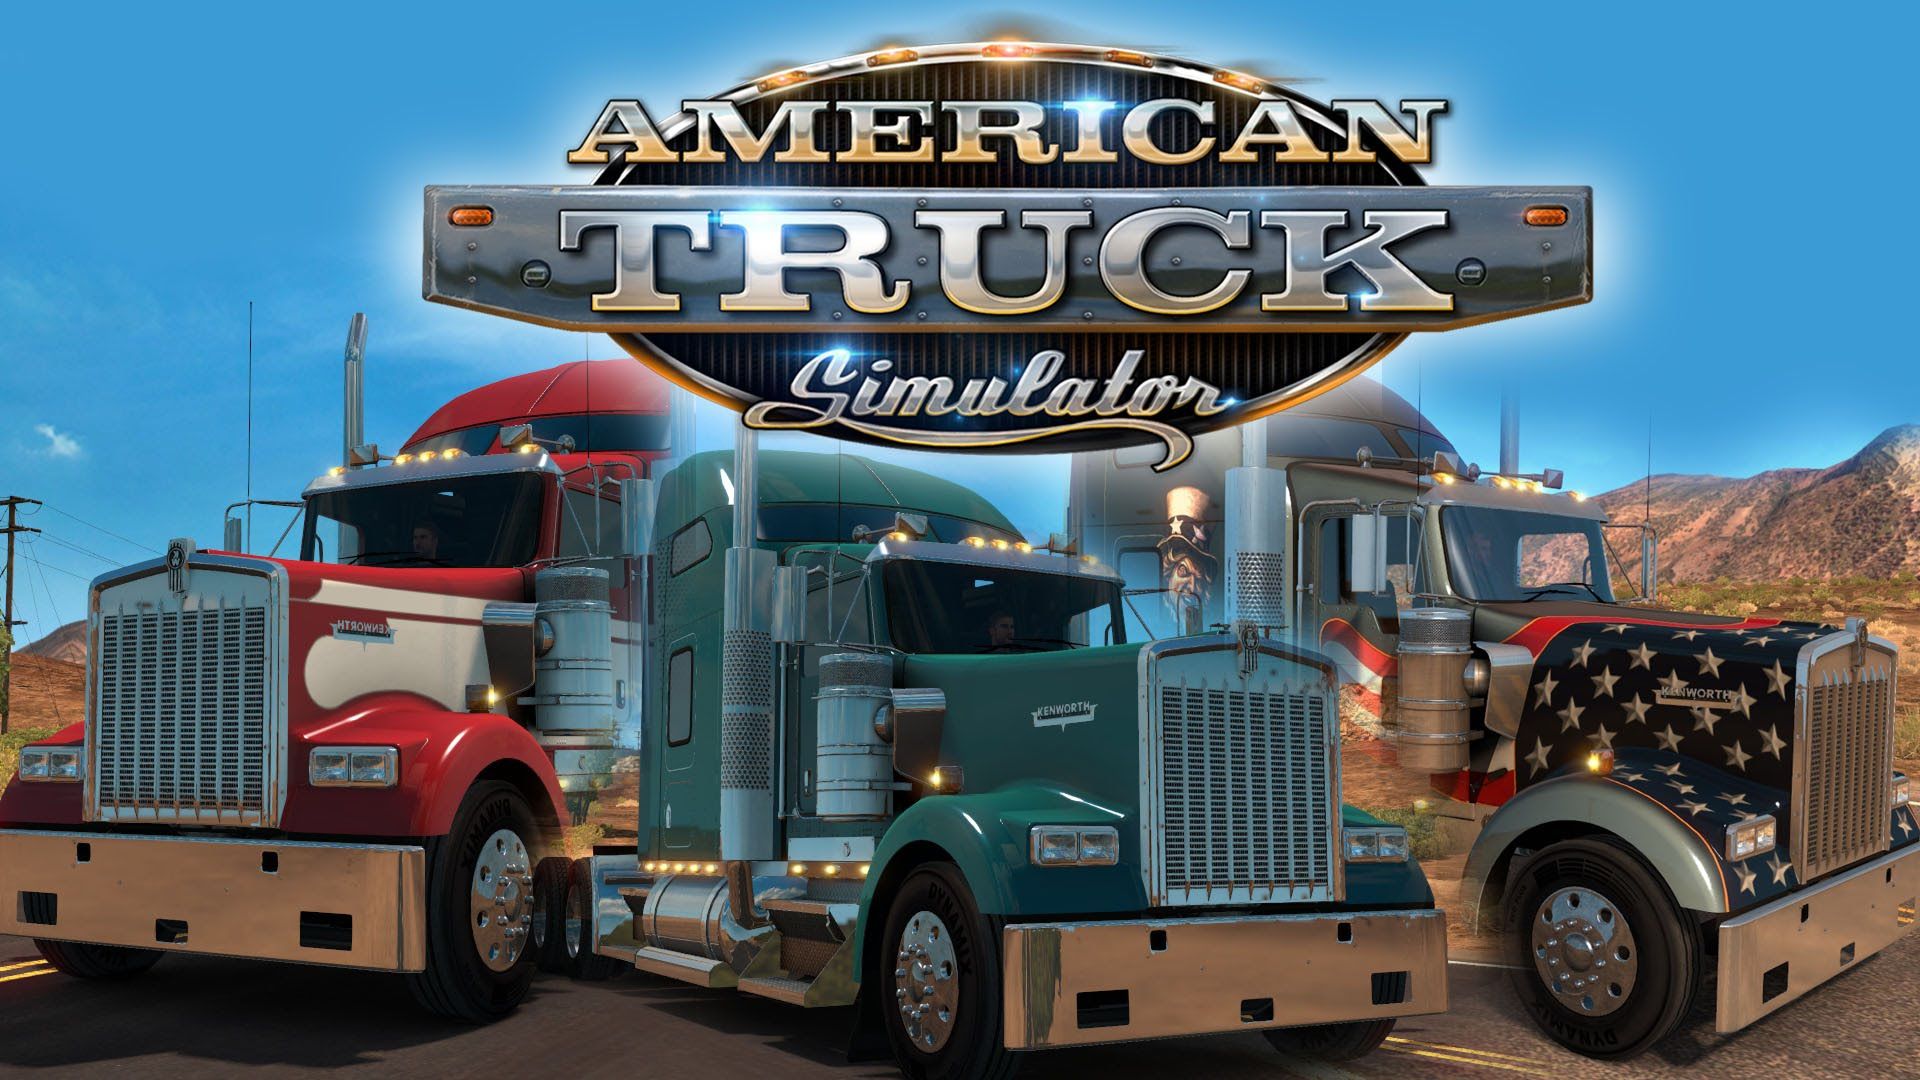 american truck simulator 1.31 download